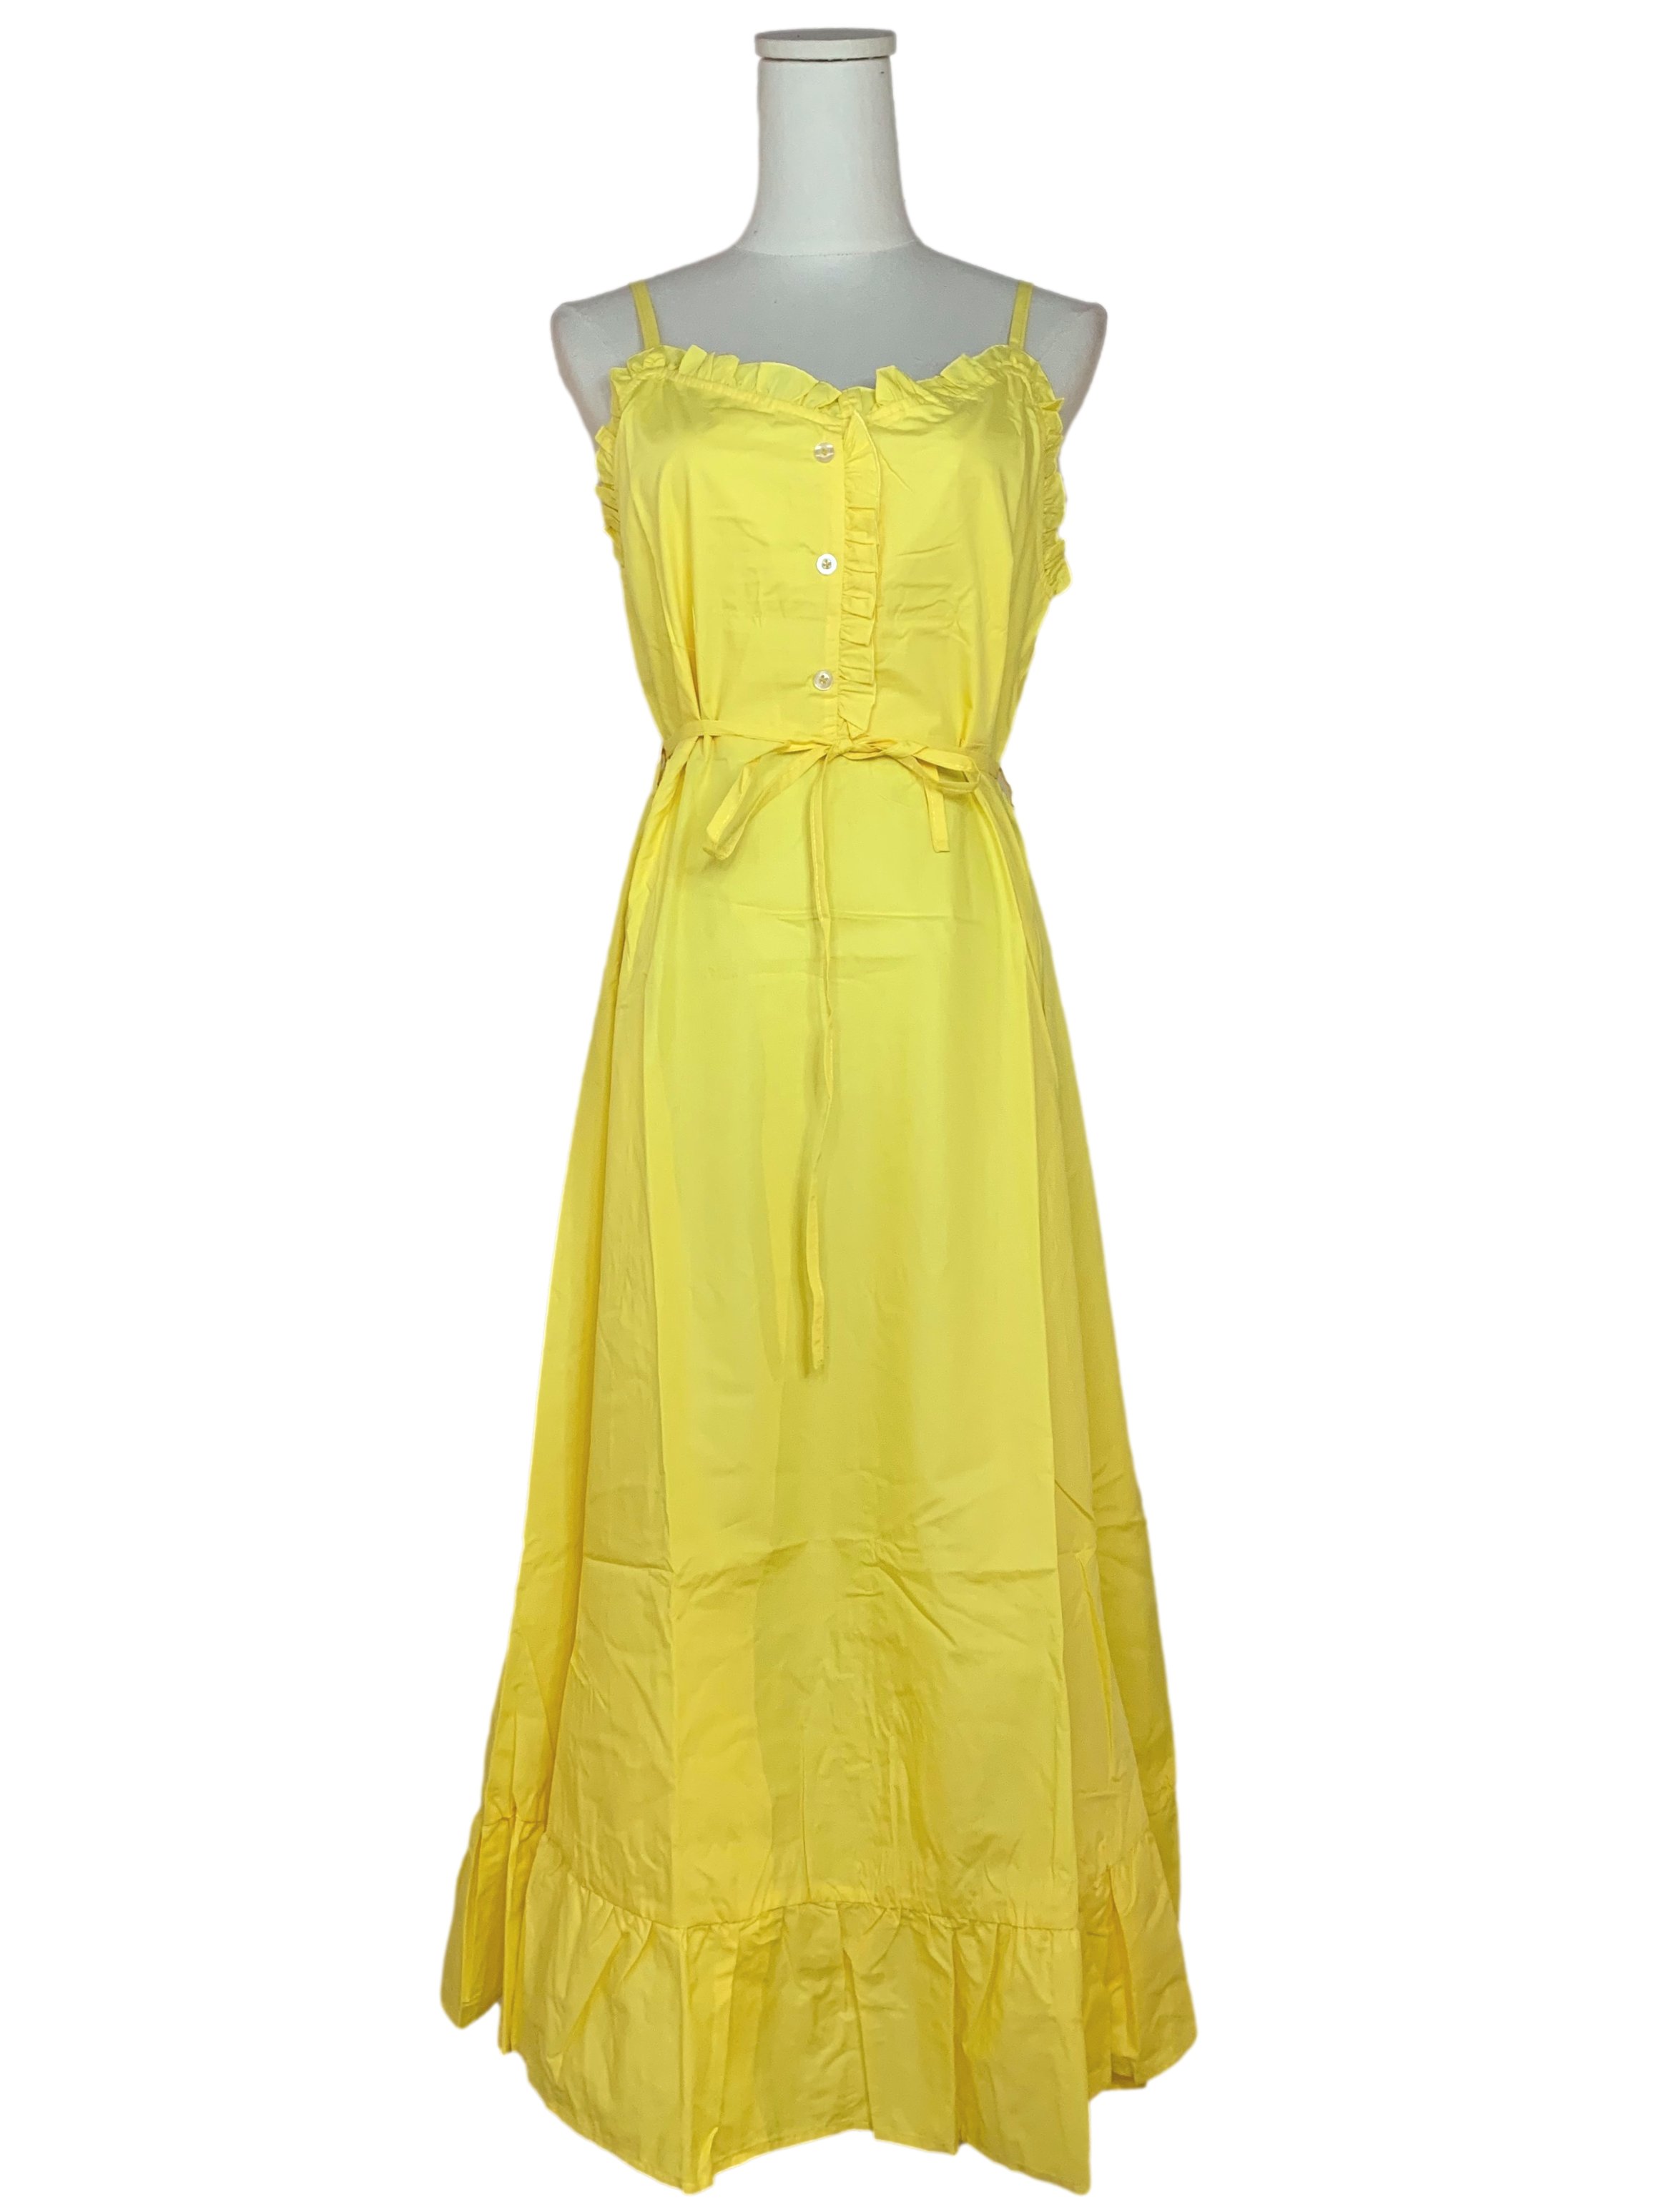 Macaroon Yellow Strap Ruffled Hem Dress